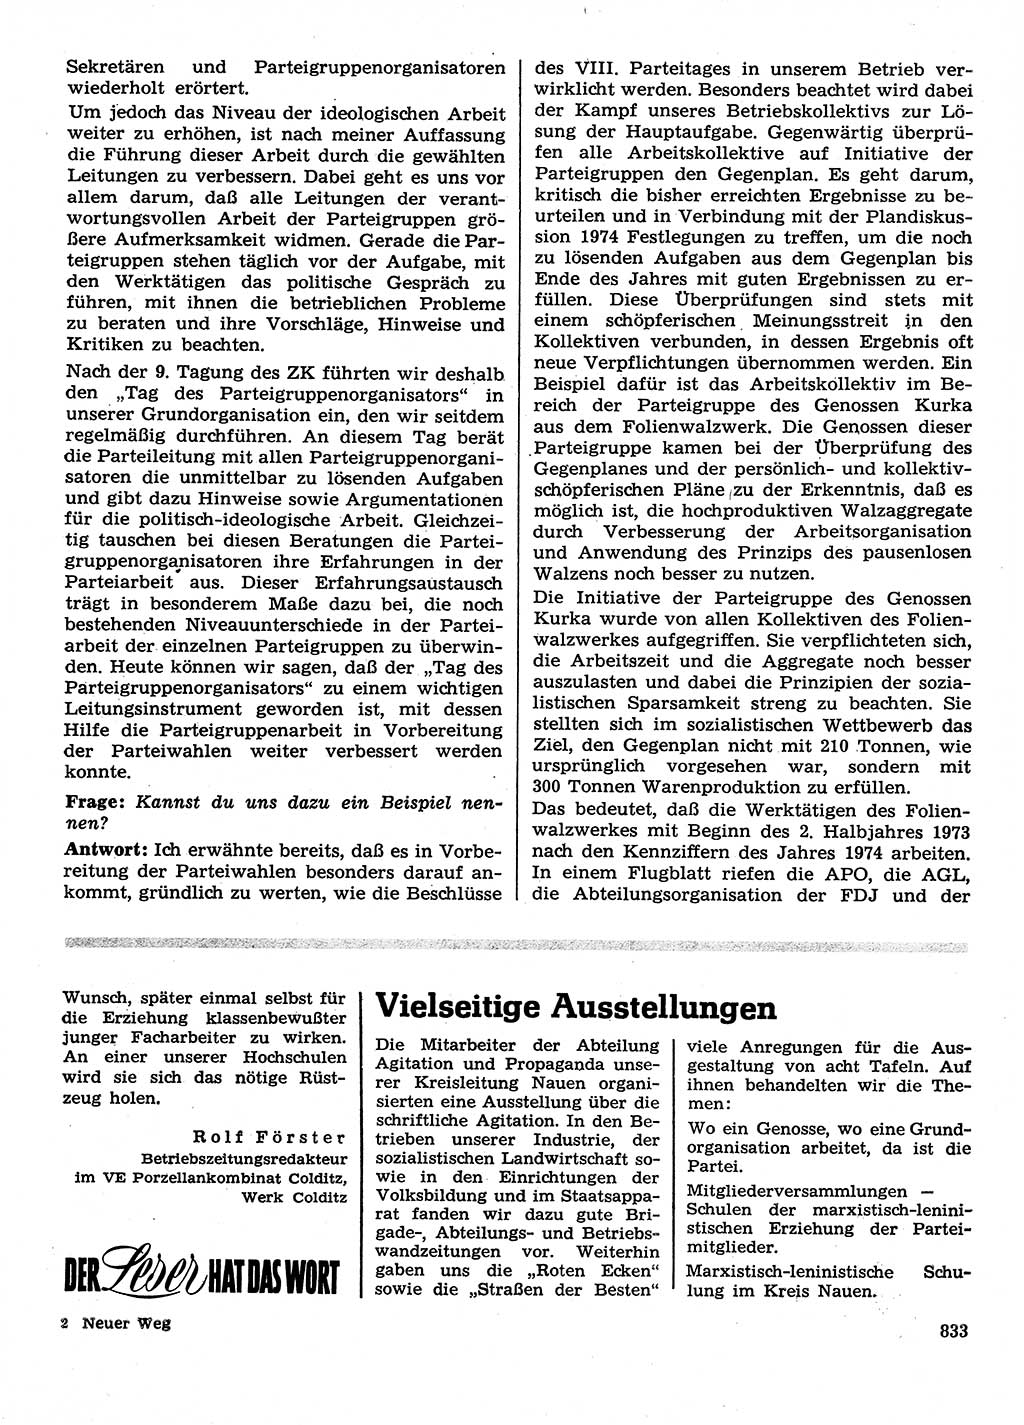 Neuer Weg (NW), Organ des Zentralkomitees (ZK) der SED (Sozialistische Einheitspartei Deutschlands) für Fragen des Parteilebens, 28. Jahrgang [Deutsche Demokratische Republik (DDR)] 1973, Seite 833 (NW ZK SED DDR 1973, S. 833)